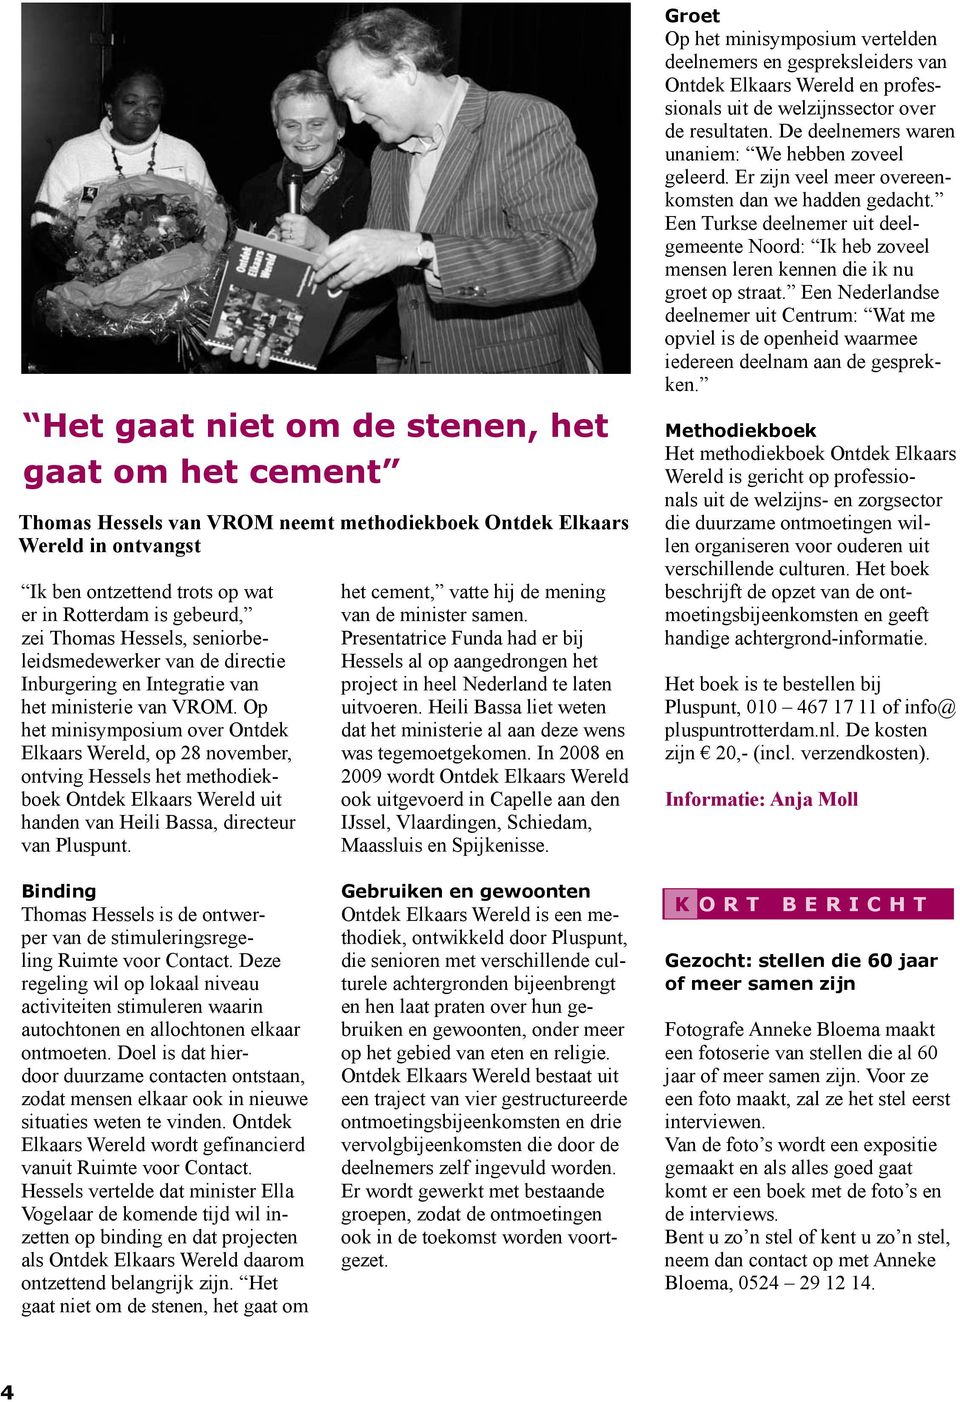 Op het minisymposium over Ontdek Elkaars Wereld, op 28 november, ontving Hessels het methodiekboek Ontdek Elkaars Wereld uit handen van Heili Bassa, directeur van Pluspunt.